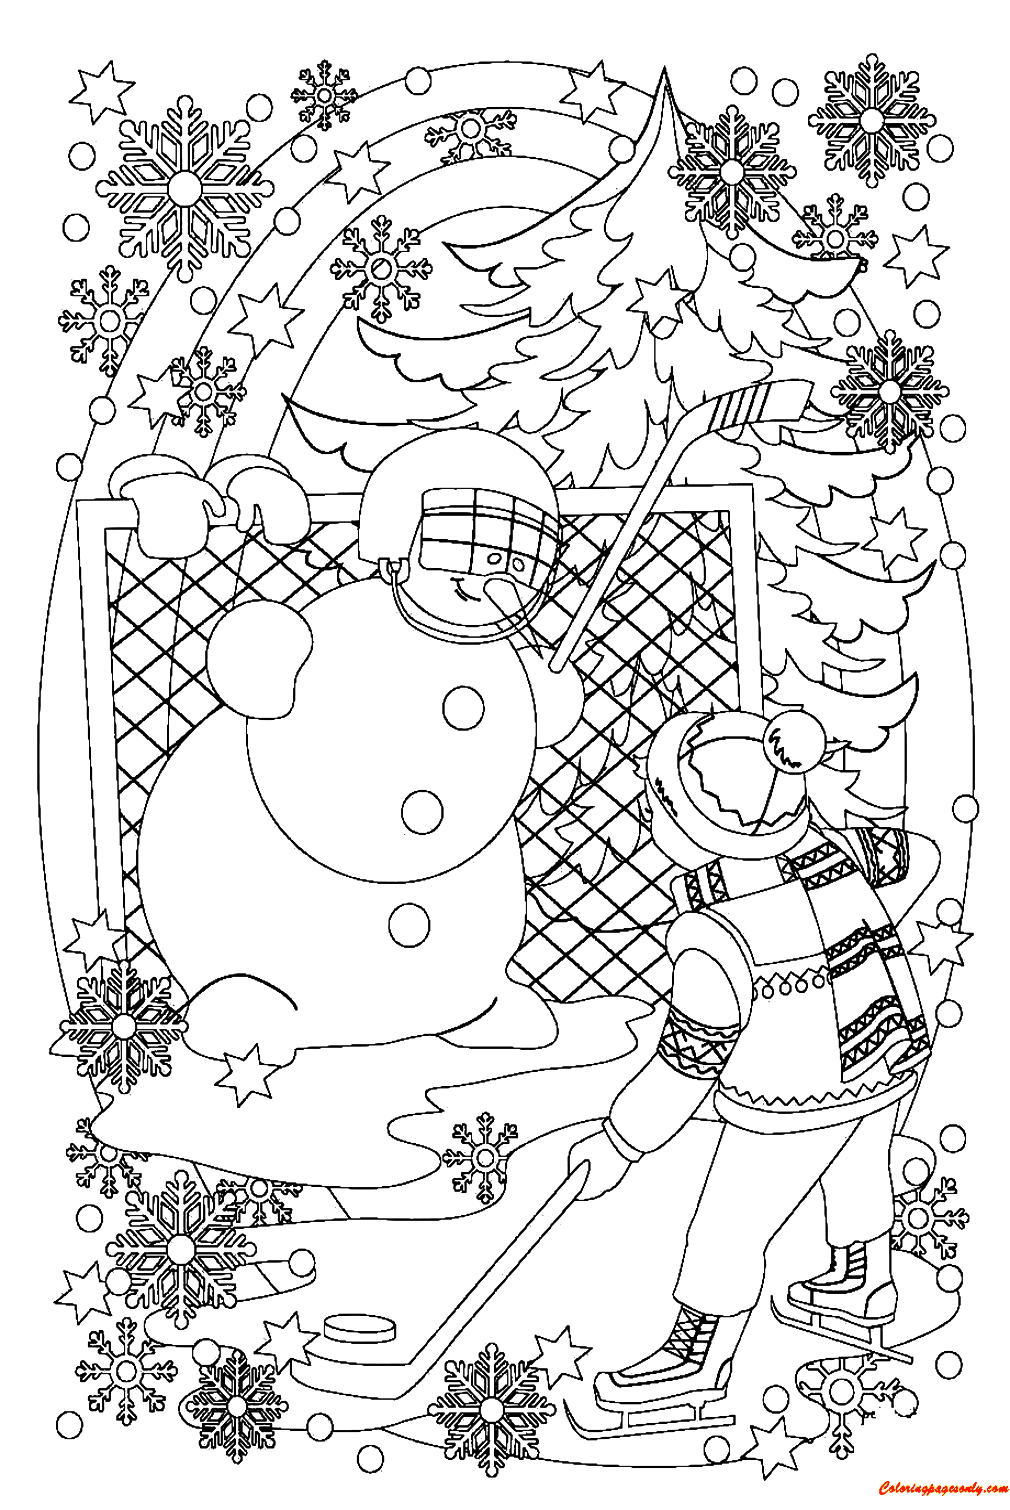 رجل ثلج وصبي يلعبان الهوكي في لعبة ثلجي من رجل الثلج